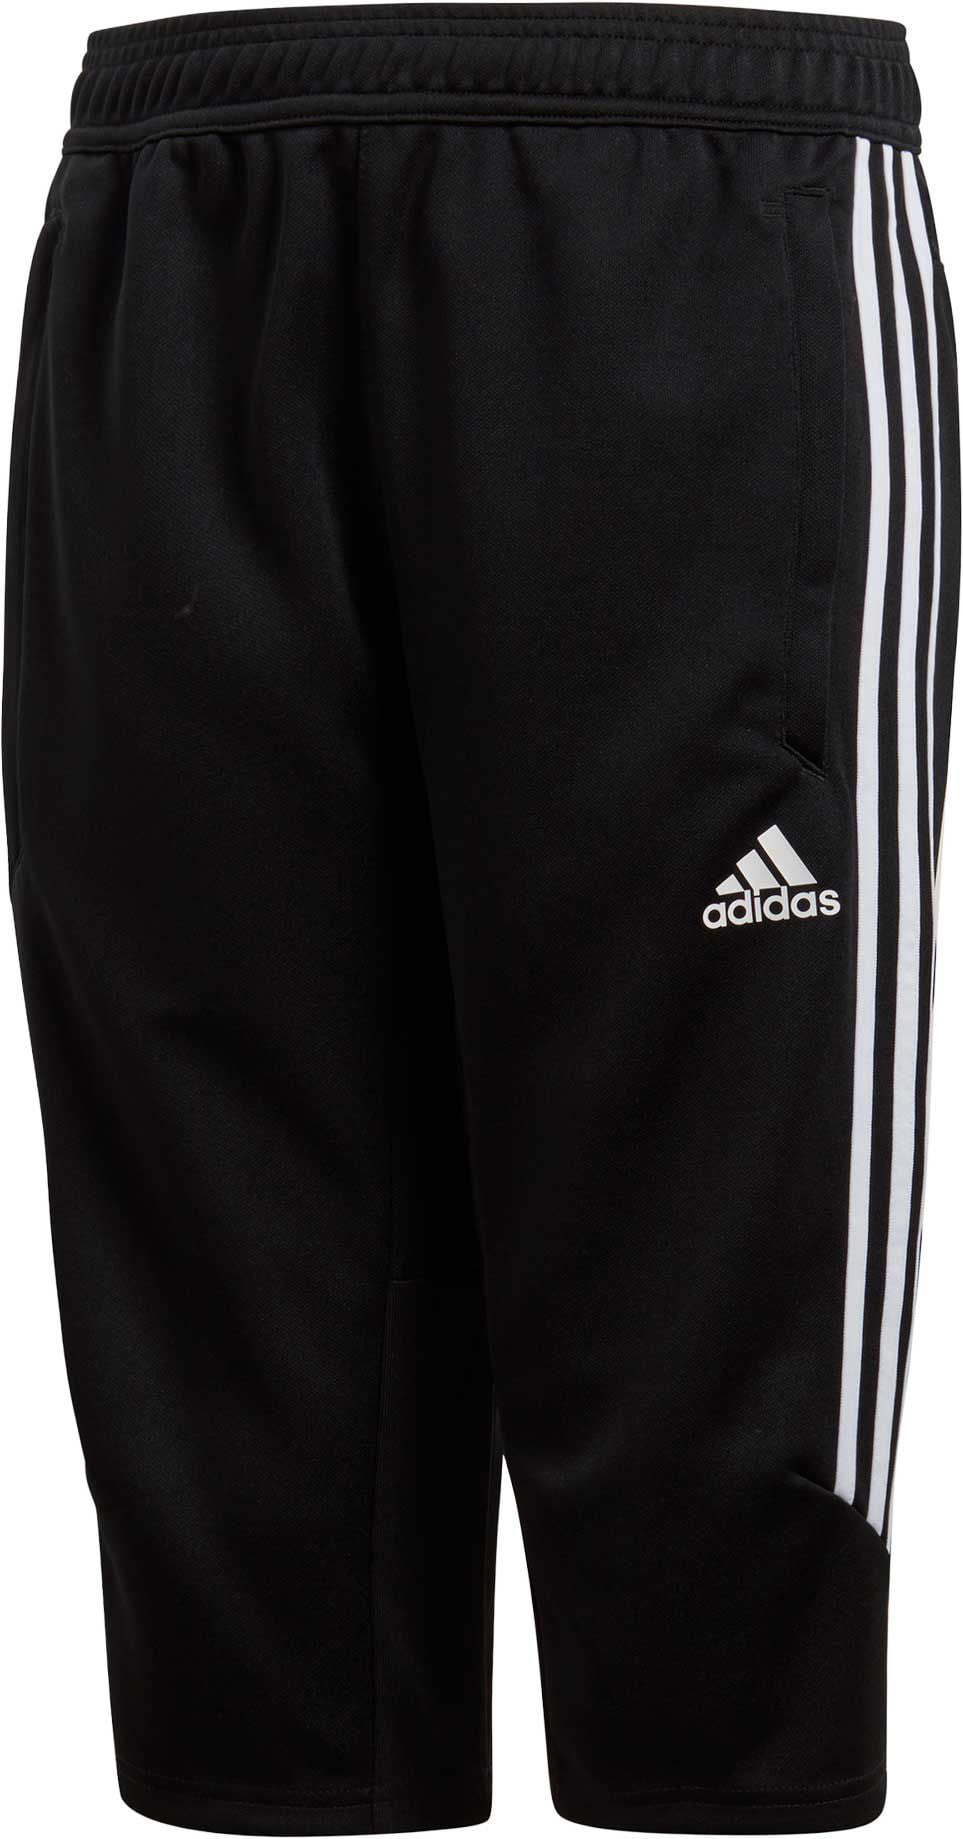 adidas | Shorts | Adidas 34 Soccer Futbol Pants Xs | Poshmark